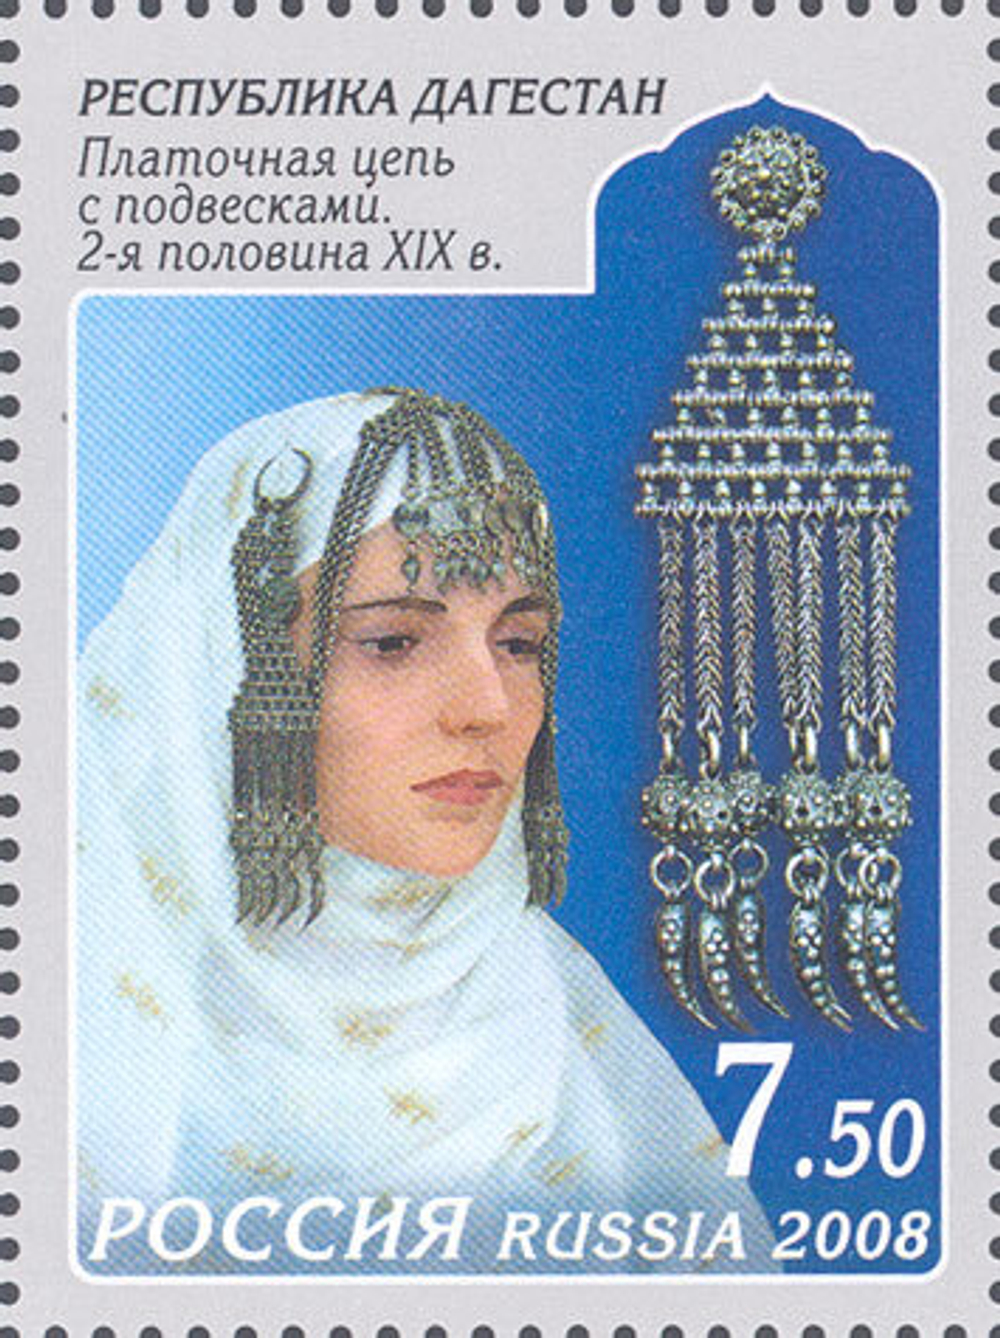 Марка номиналом 7,5 рублей. Декоративно-прикладное искусство Республики Дагестан